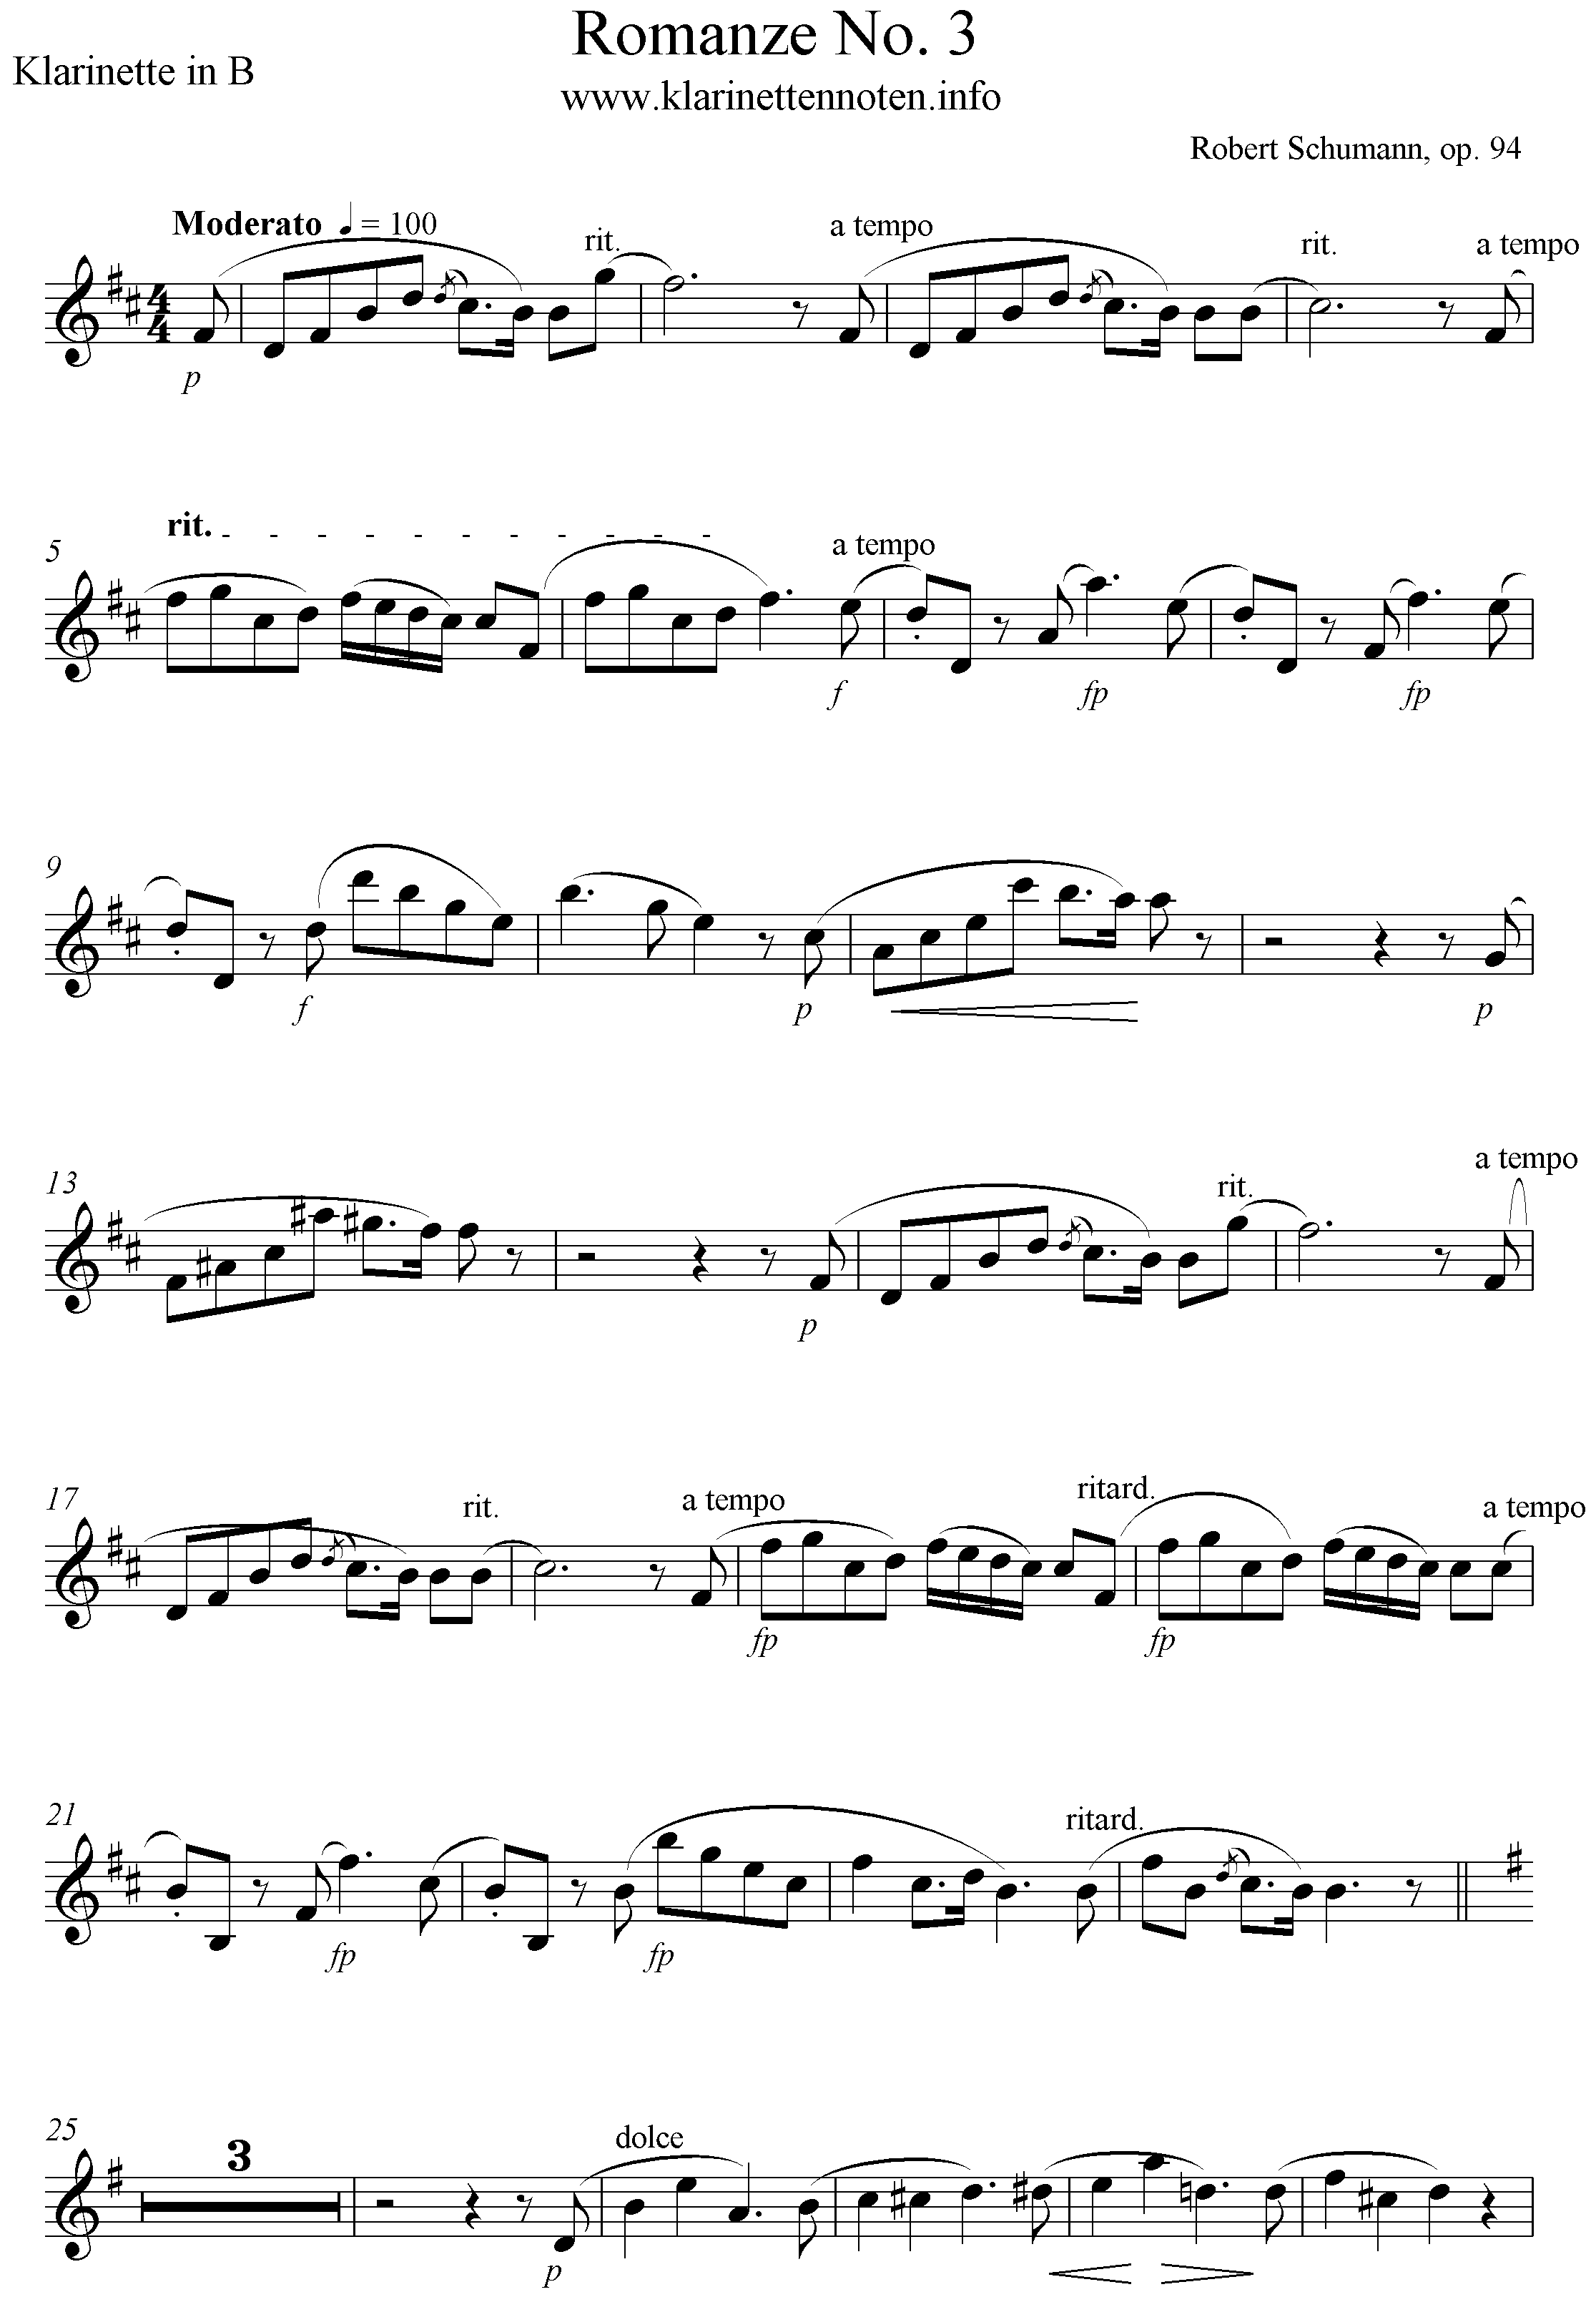 Romanze No.3, op.94, Robert Schumann D-Dur